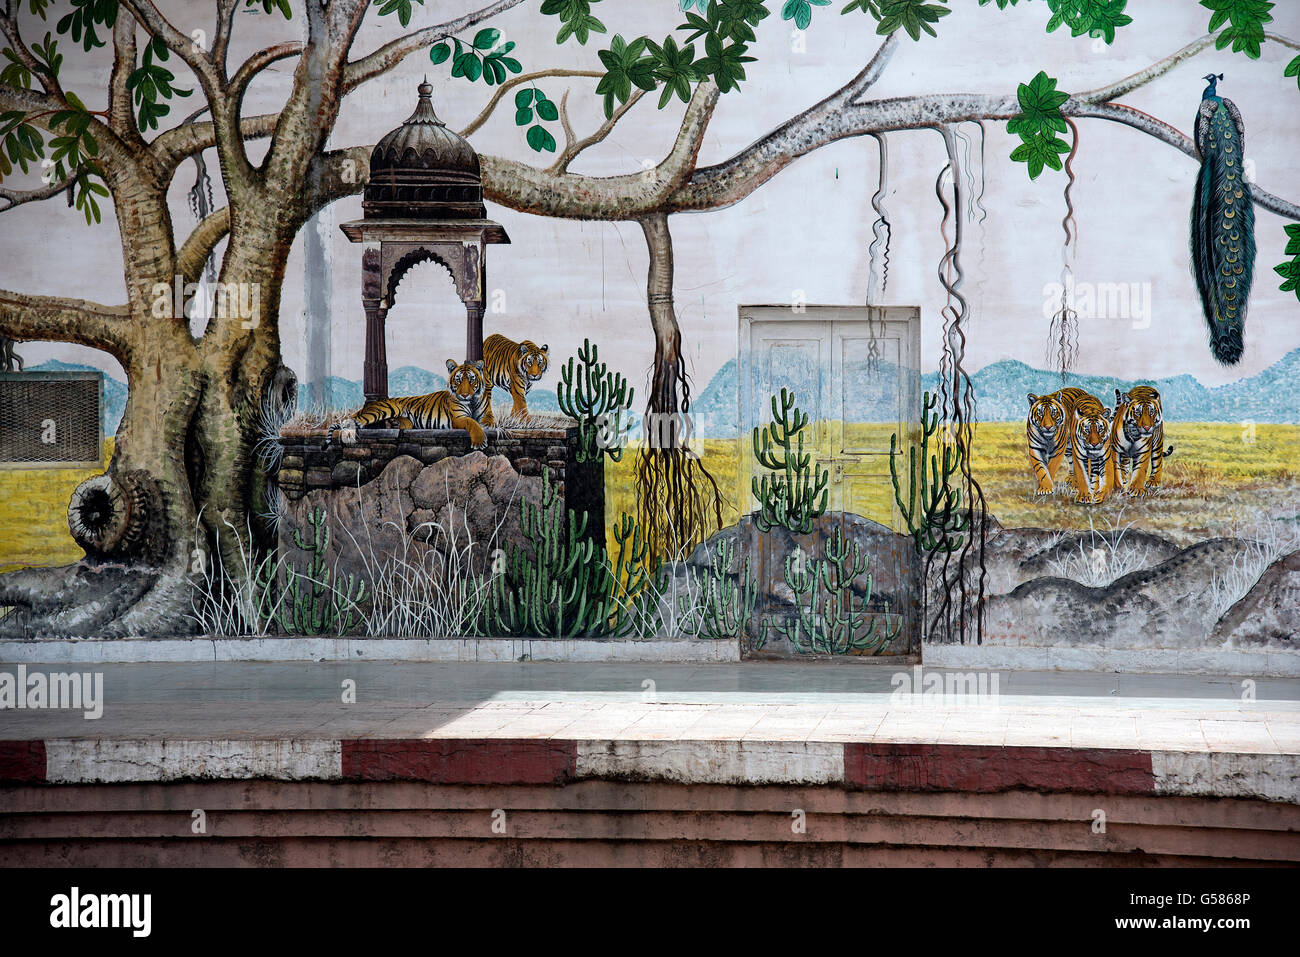 Das Bild der Malerei wurde am Sawai Madhopur Bahnhof, Indien aufgenommen. Stockfoto